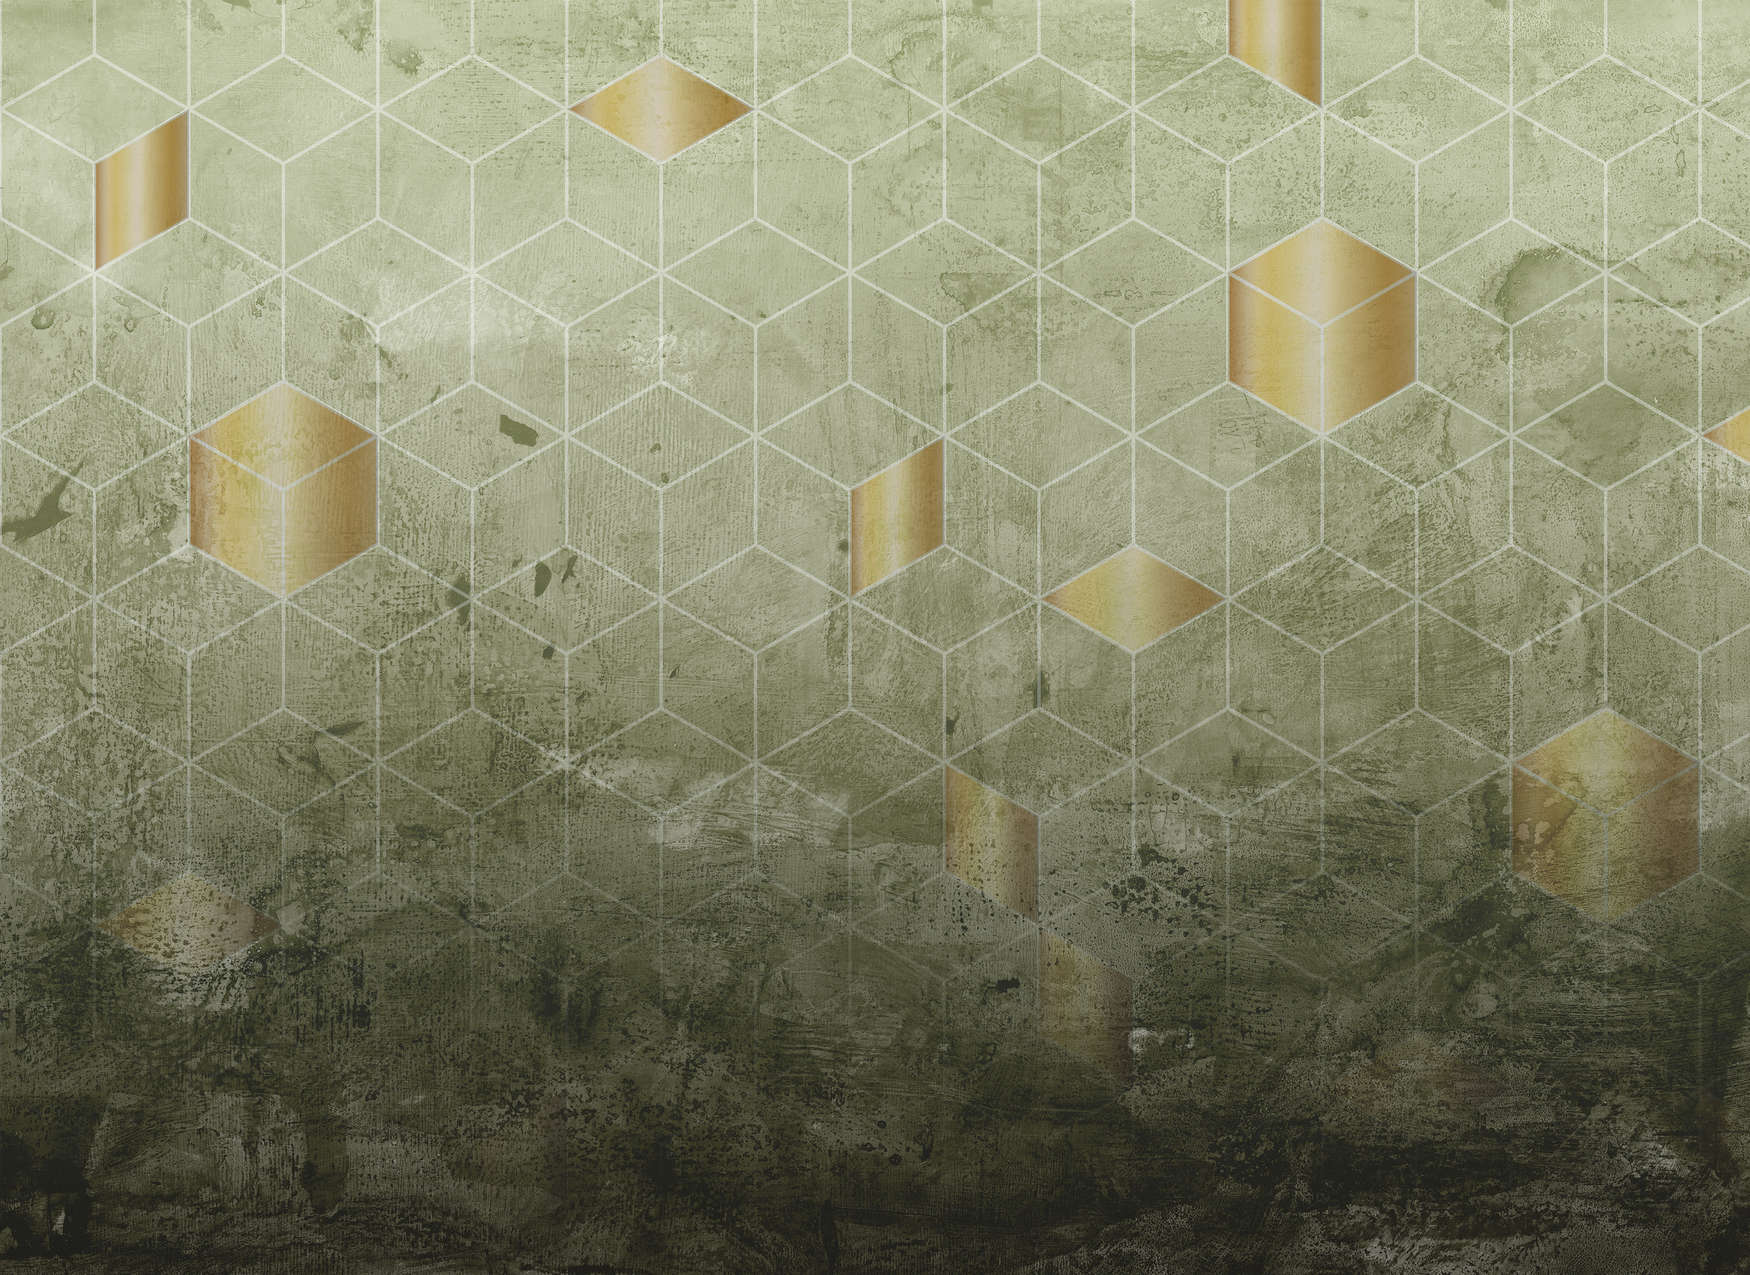             Papier peint panoramique motifs carrés avec effet 3D - vert, or
        